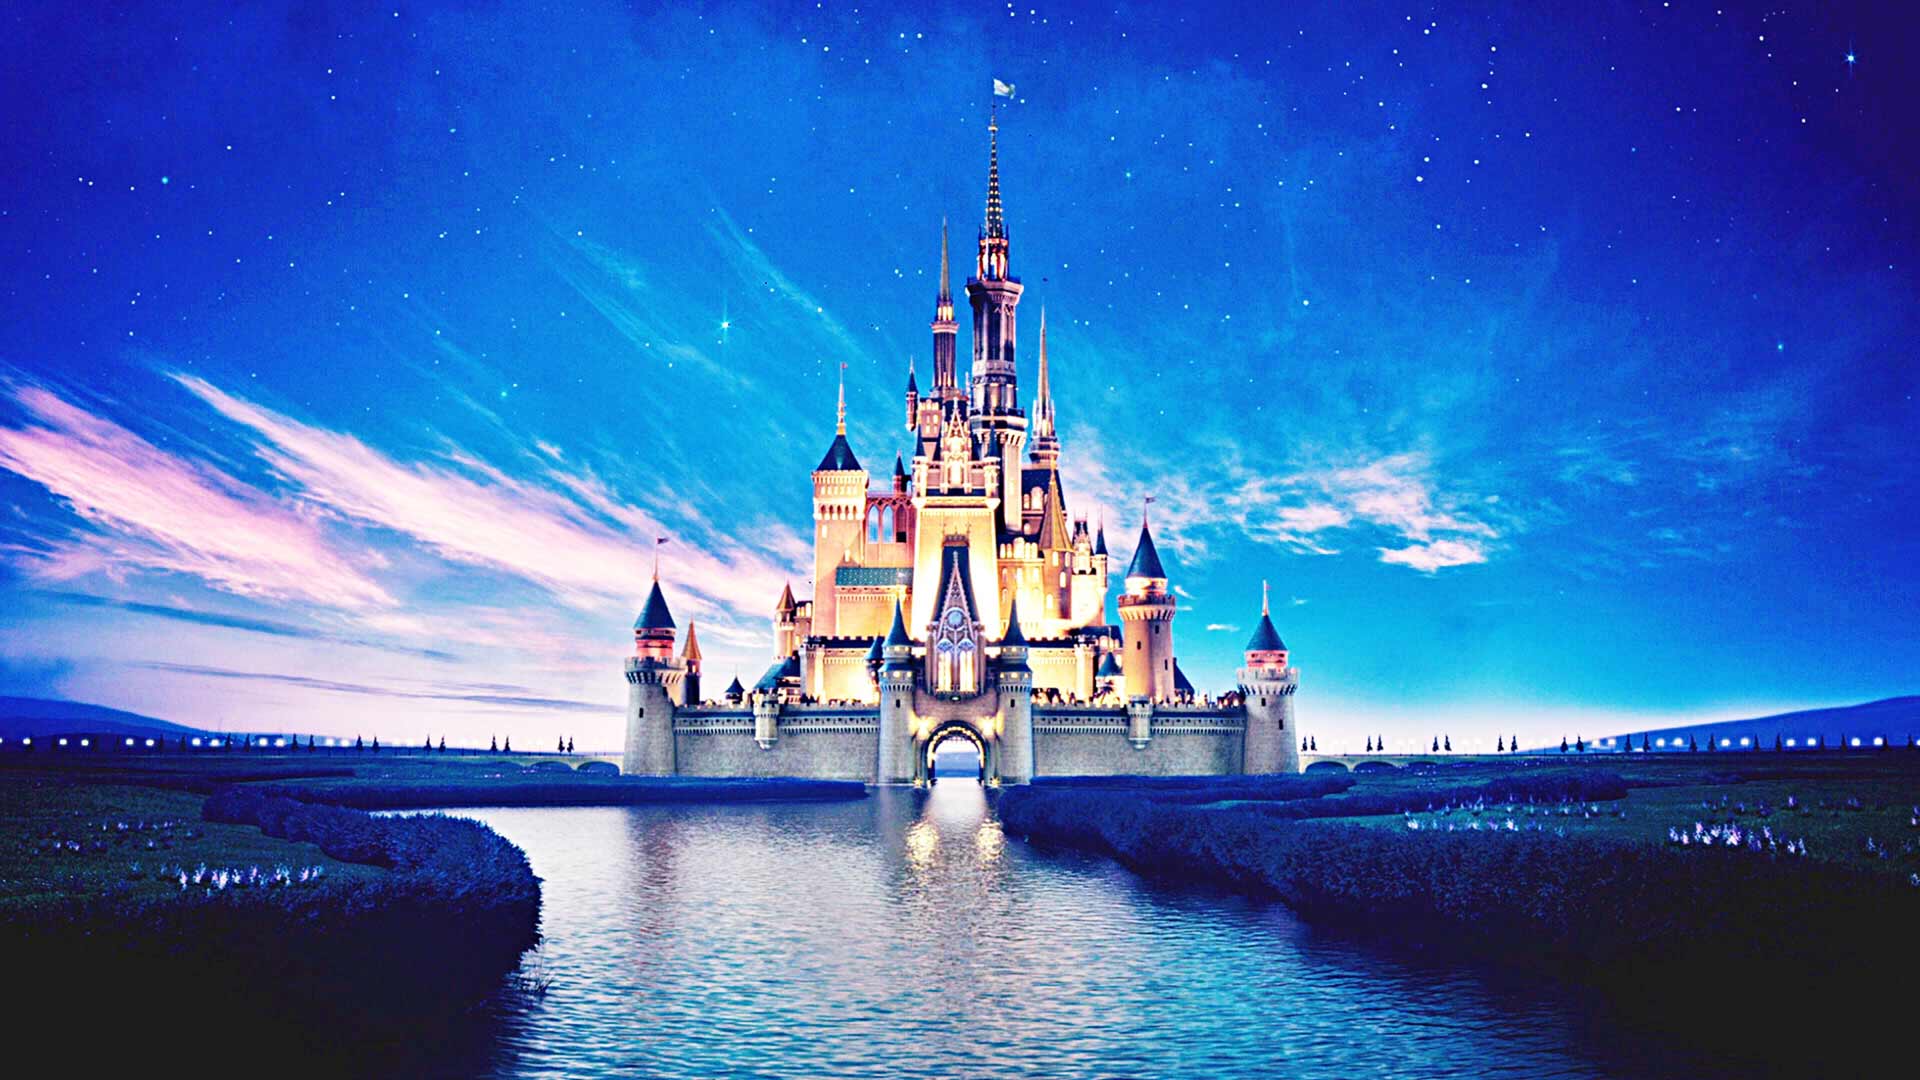 Tìm kiếm những hình nền Disney theo phong cách WallpaperSafari? Đó là một cách tuyệt vời để tìm kiếm những hình nền Disney đáng yêu và độc đáo. Những hình nền chọn lọc từ trang web này sẽ đem đến cho bạn một không gian hoàn toàn mới, mang lại cảm giác thú vị và sáng tạo. Hãy bấm vào hình ảnh để tìm kiếm những hình nền Disney WallpaperSafari đẹp mắt nhất.